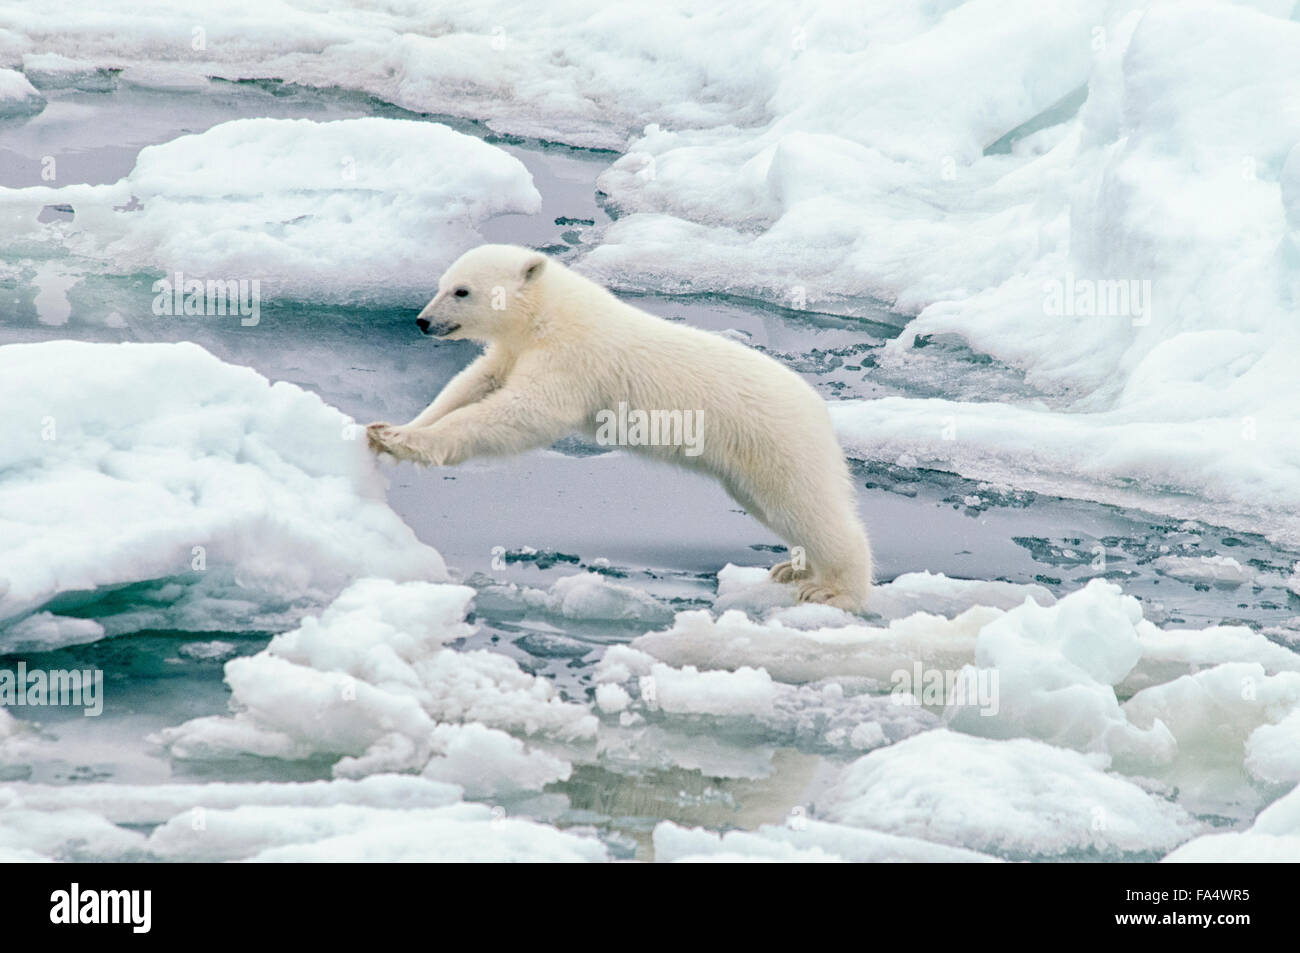 Ourson polaire mignon, Ursus maritimus, sautant d'un banc de glace sur le Olgastretet la banquise, archipel du Svalbard, Norvège Banque D'Images